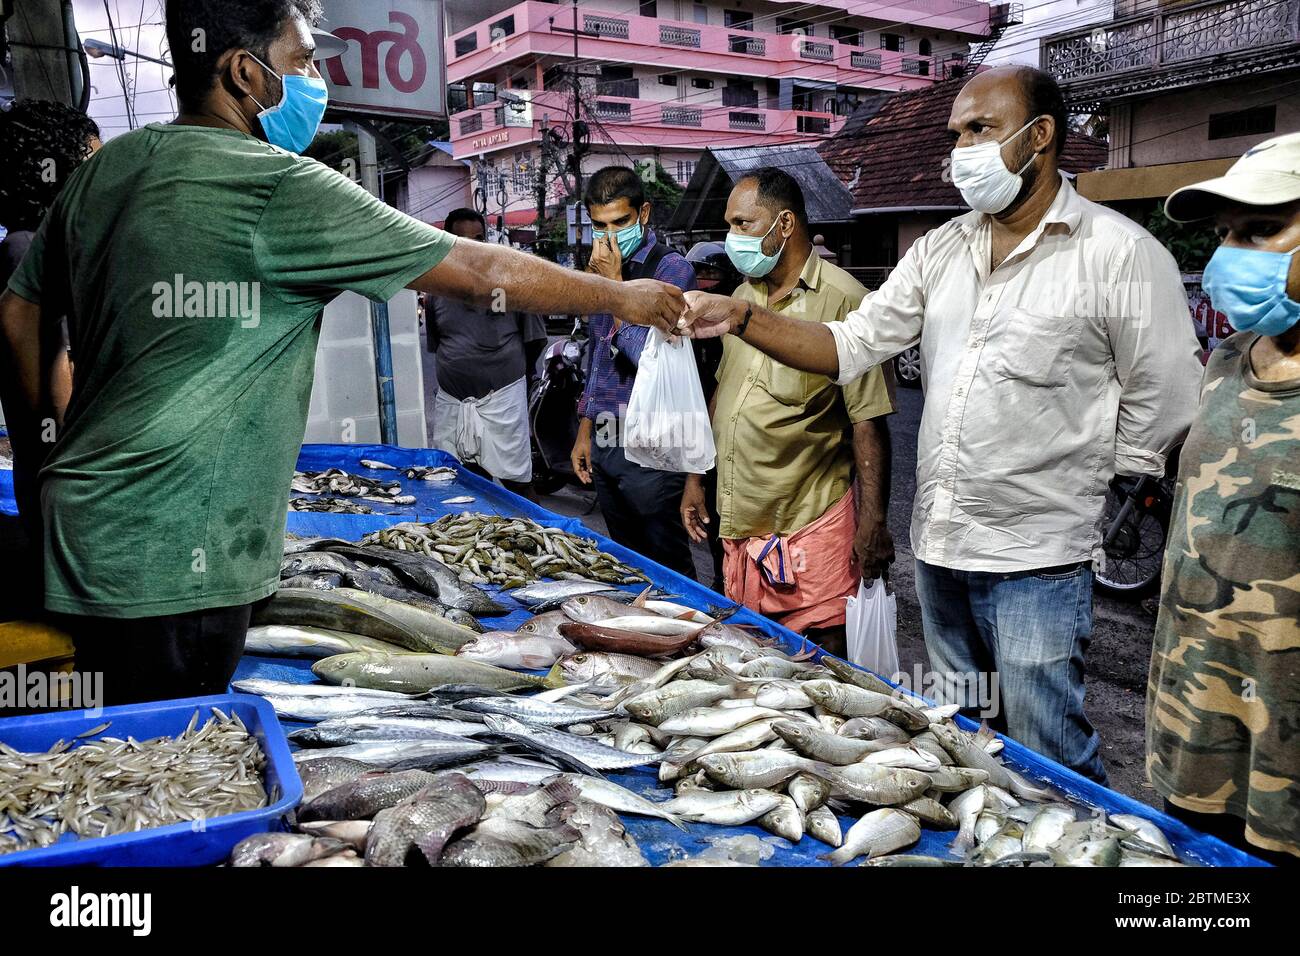 Kochi, India - Mayo 2020: Hombres comprando pescado durante el cierre de la pandemia de Covid-19 el 26 de mayo de 2020 en Kochi, Kerala, India. Foto de stock